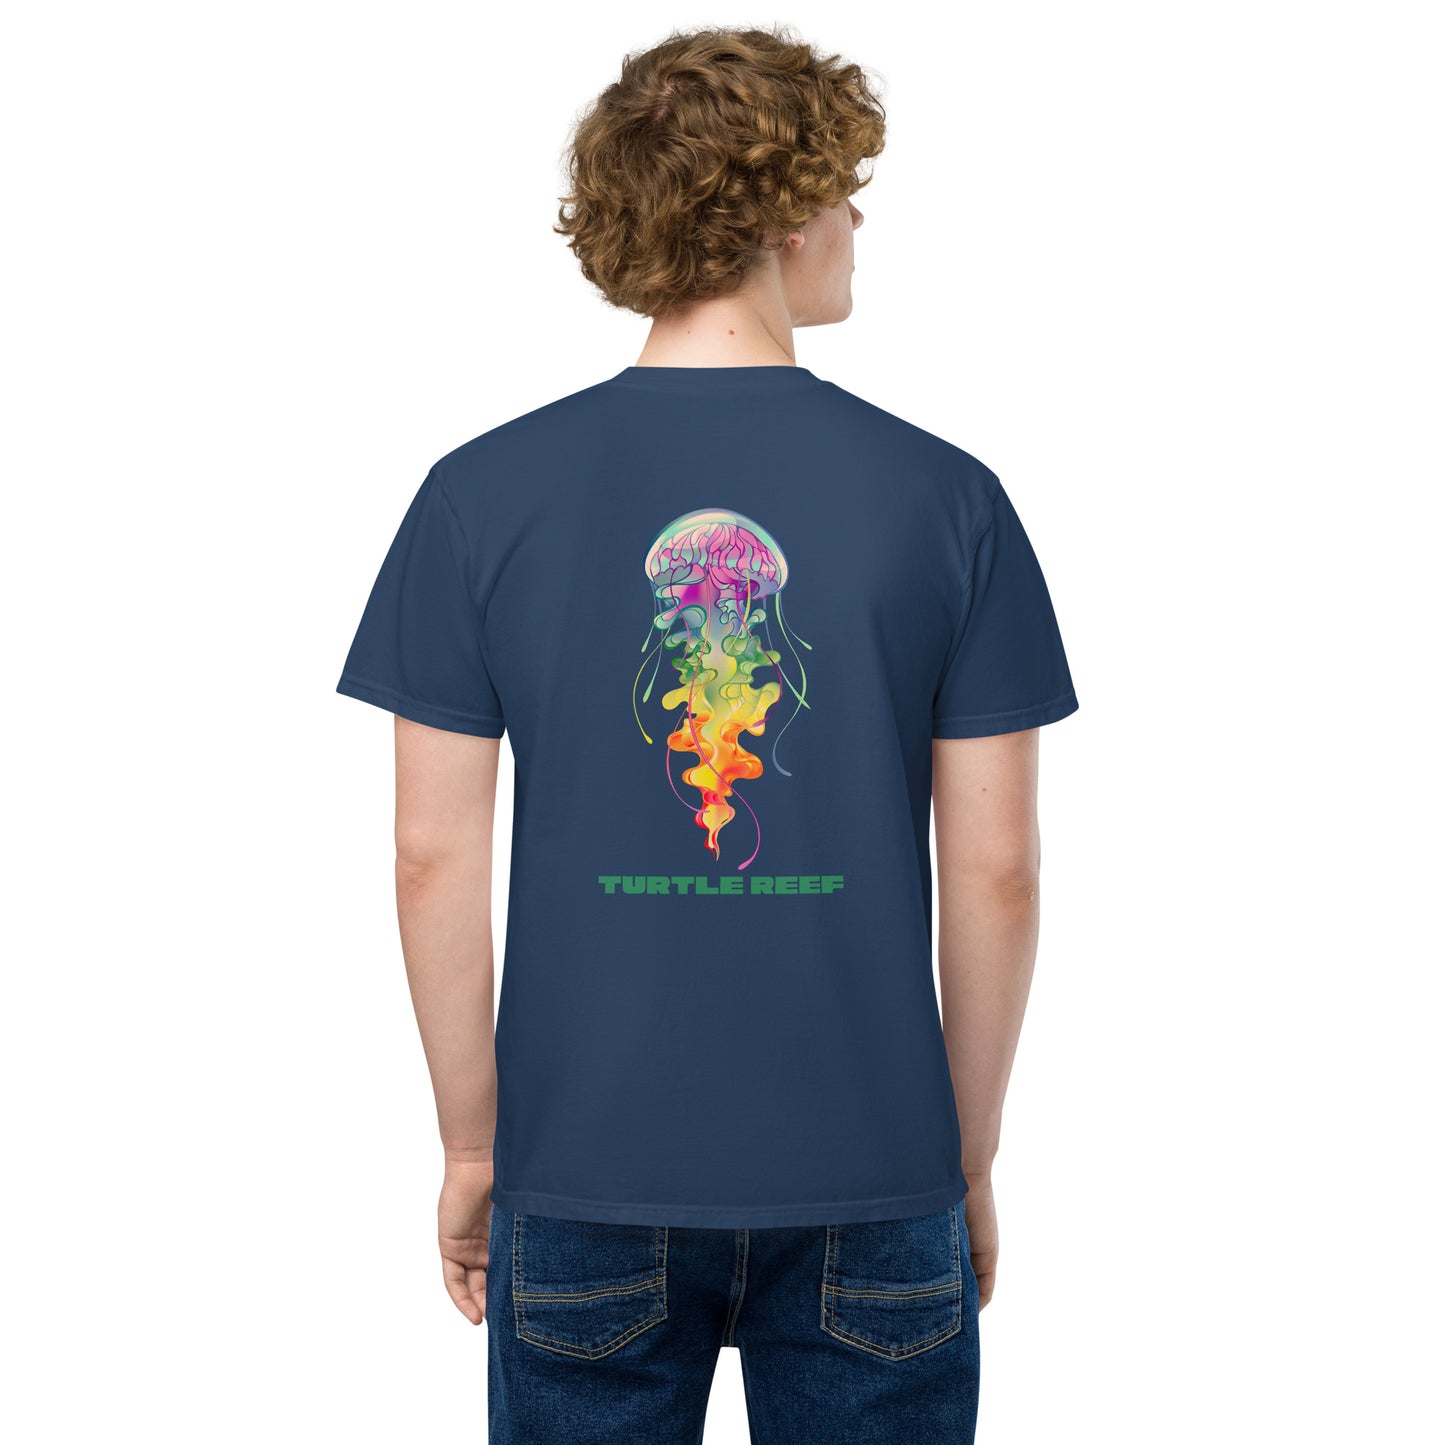 Jellyfish pocket T-shirt